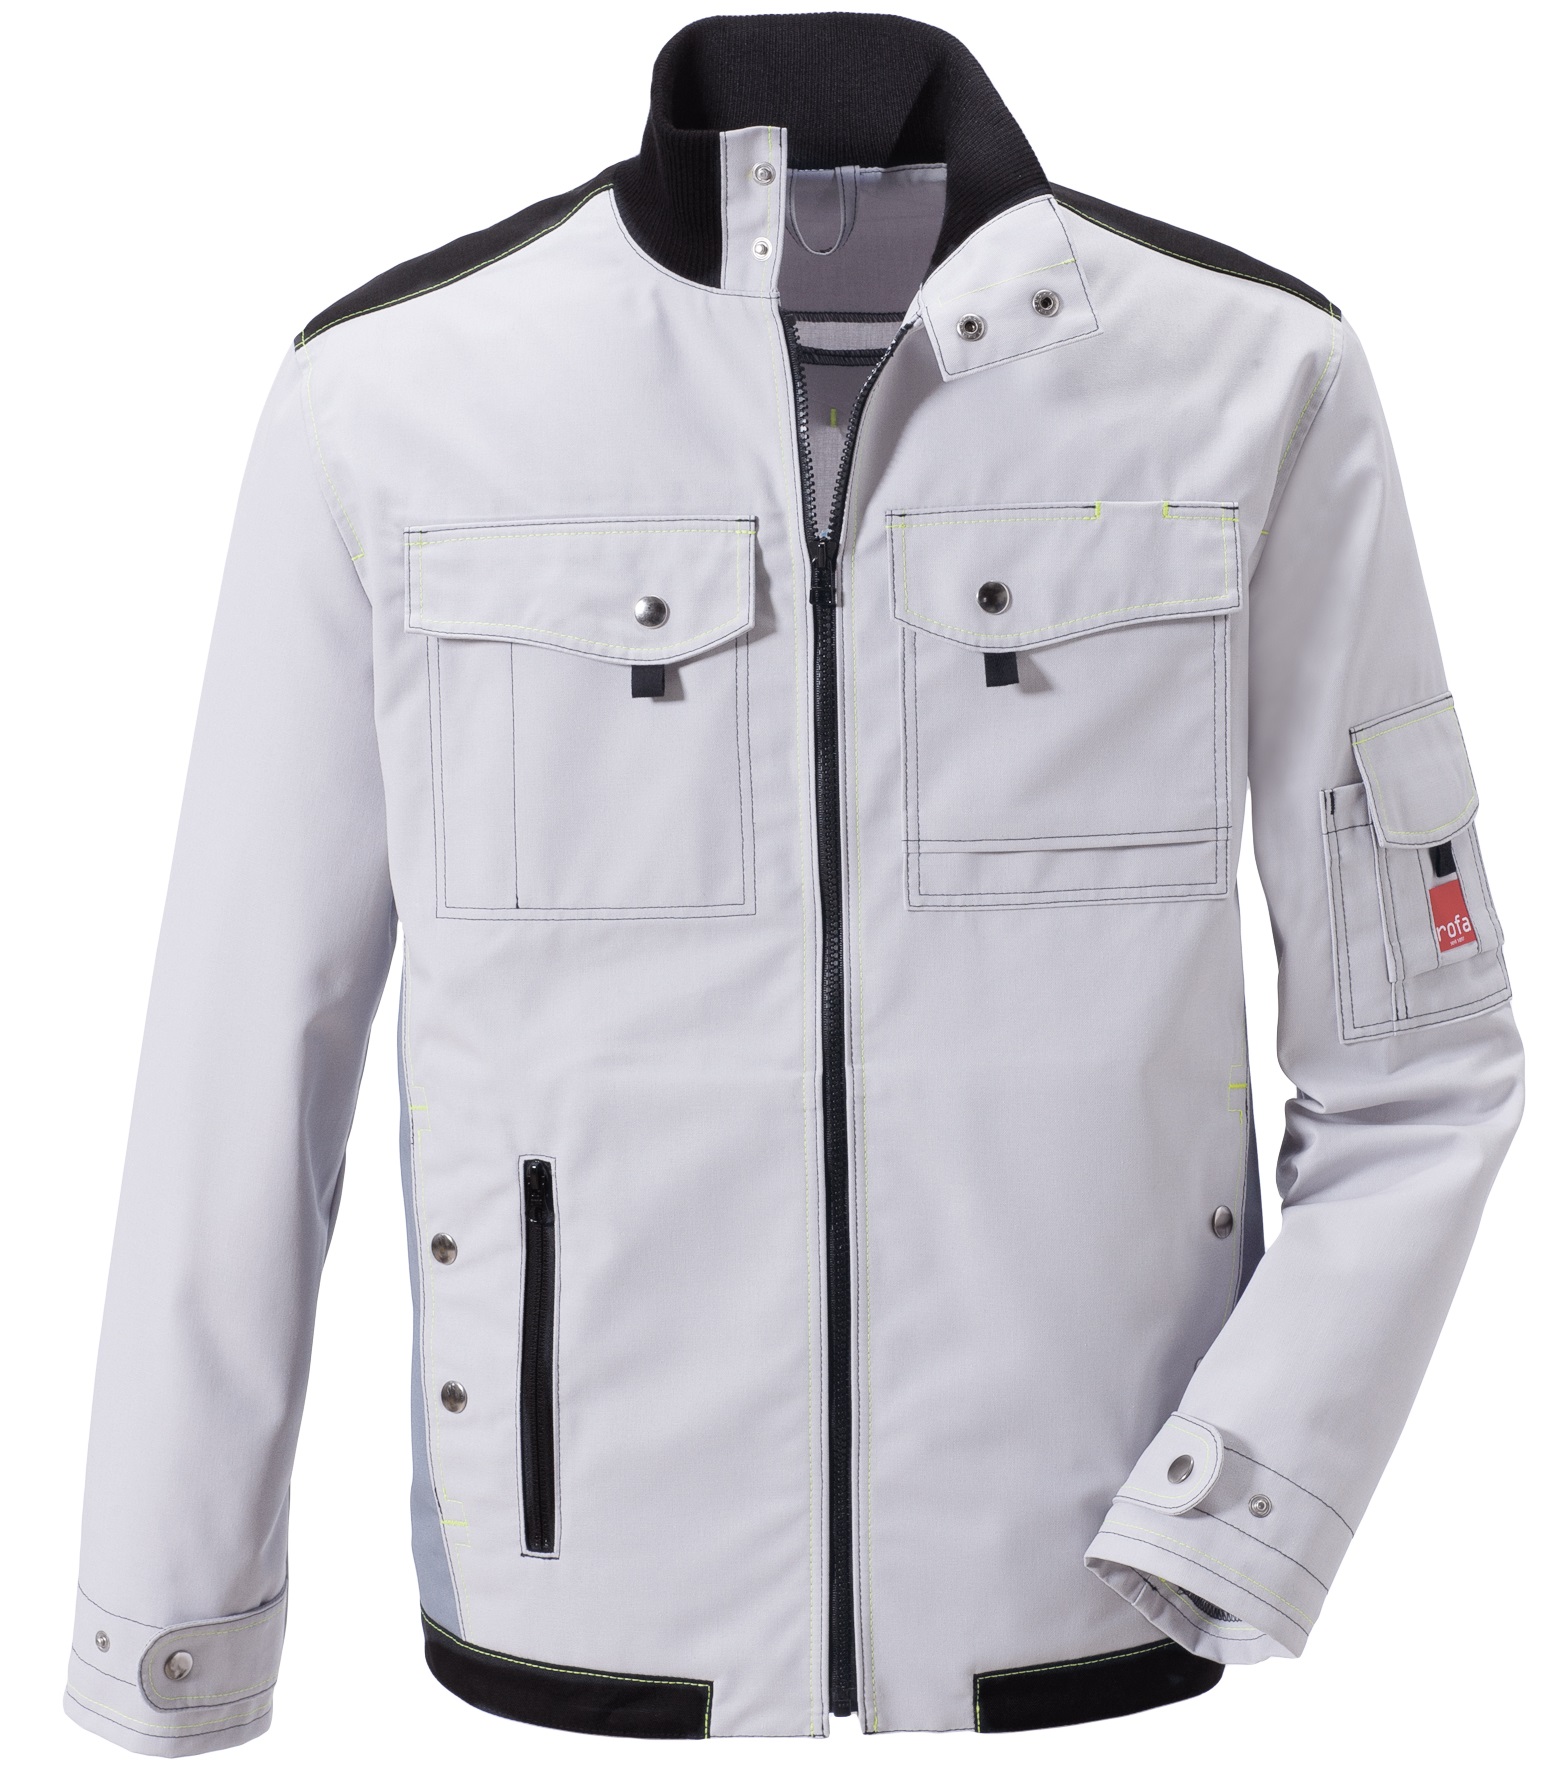 ROFA Biker Jacke Arbeitsjacke Berufsjacke Schutzjacke Arbeitskleidung Berufskleidung Young hellgrau dunkelgrau ca 270 g